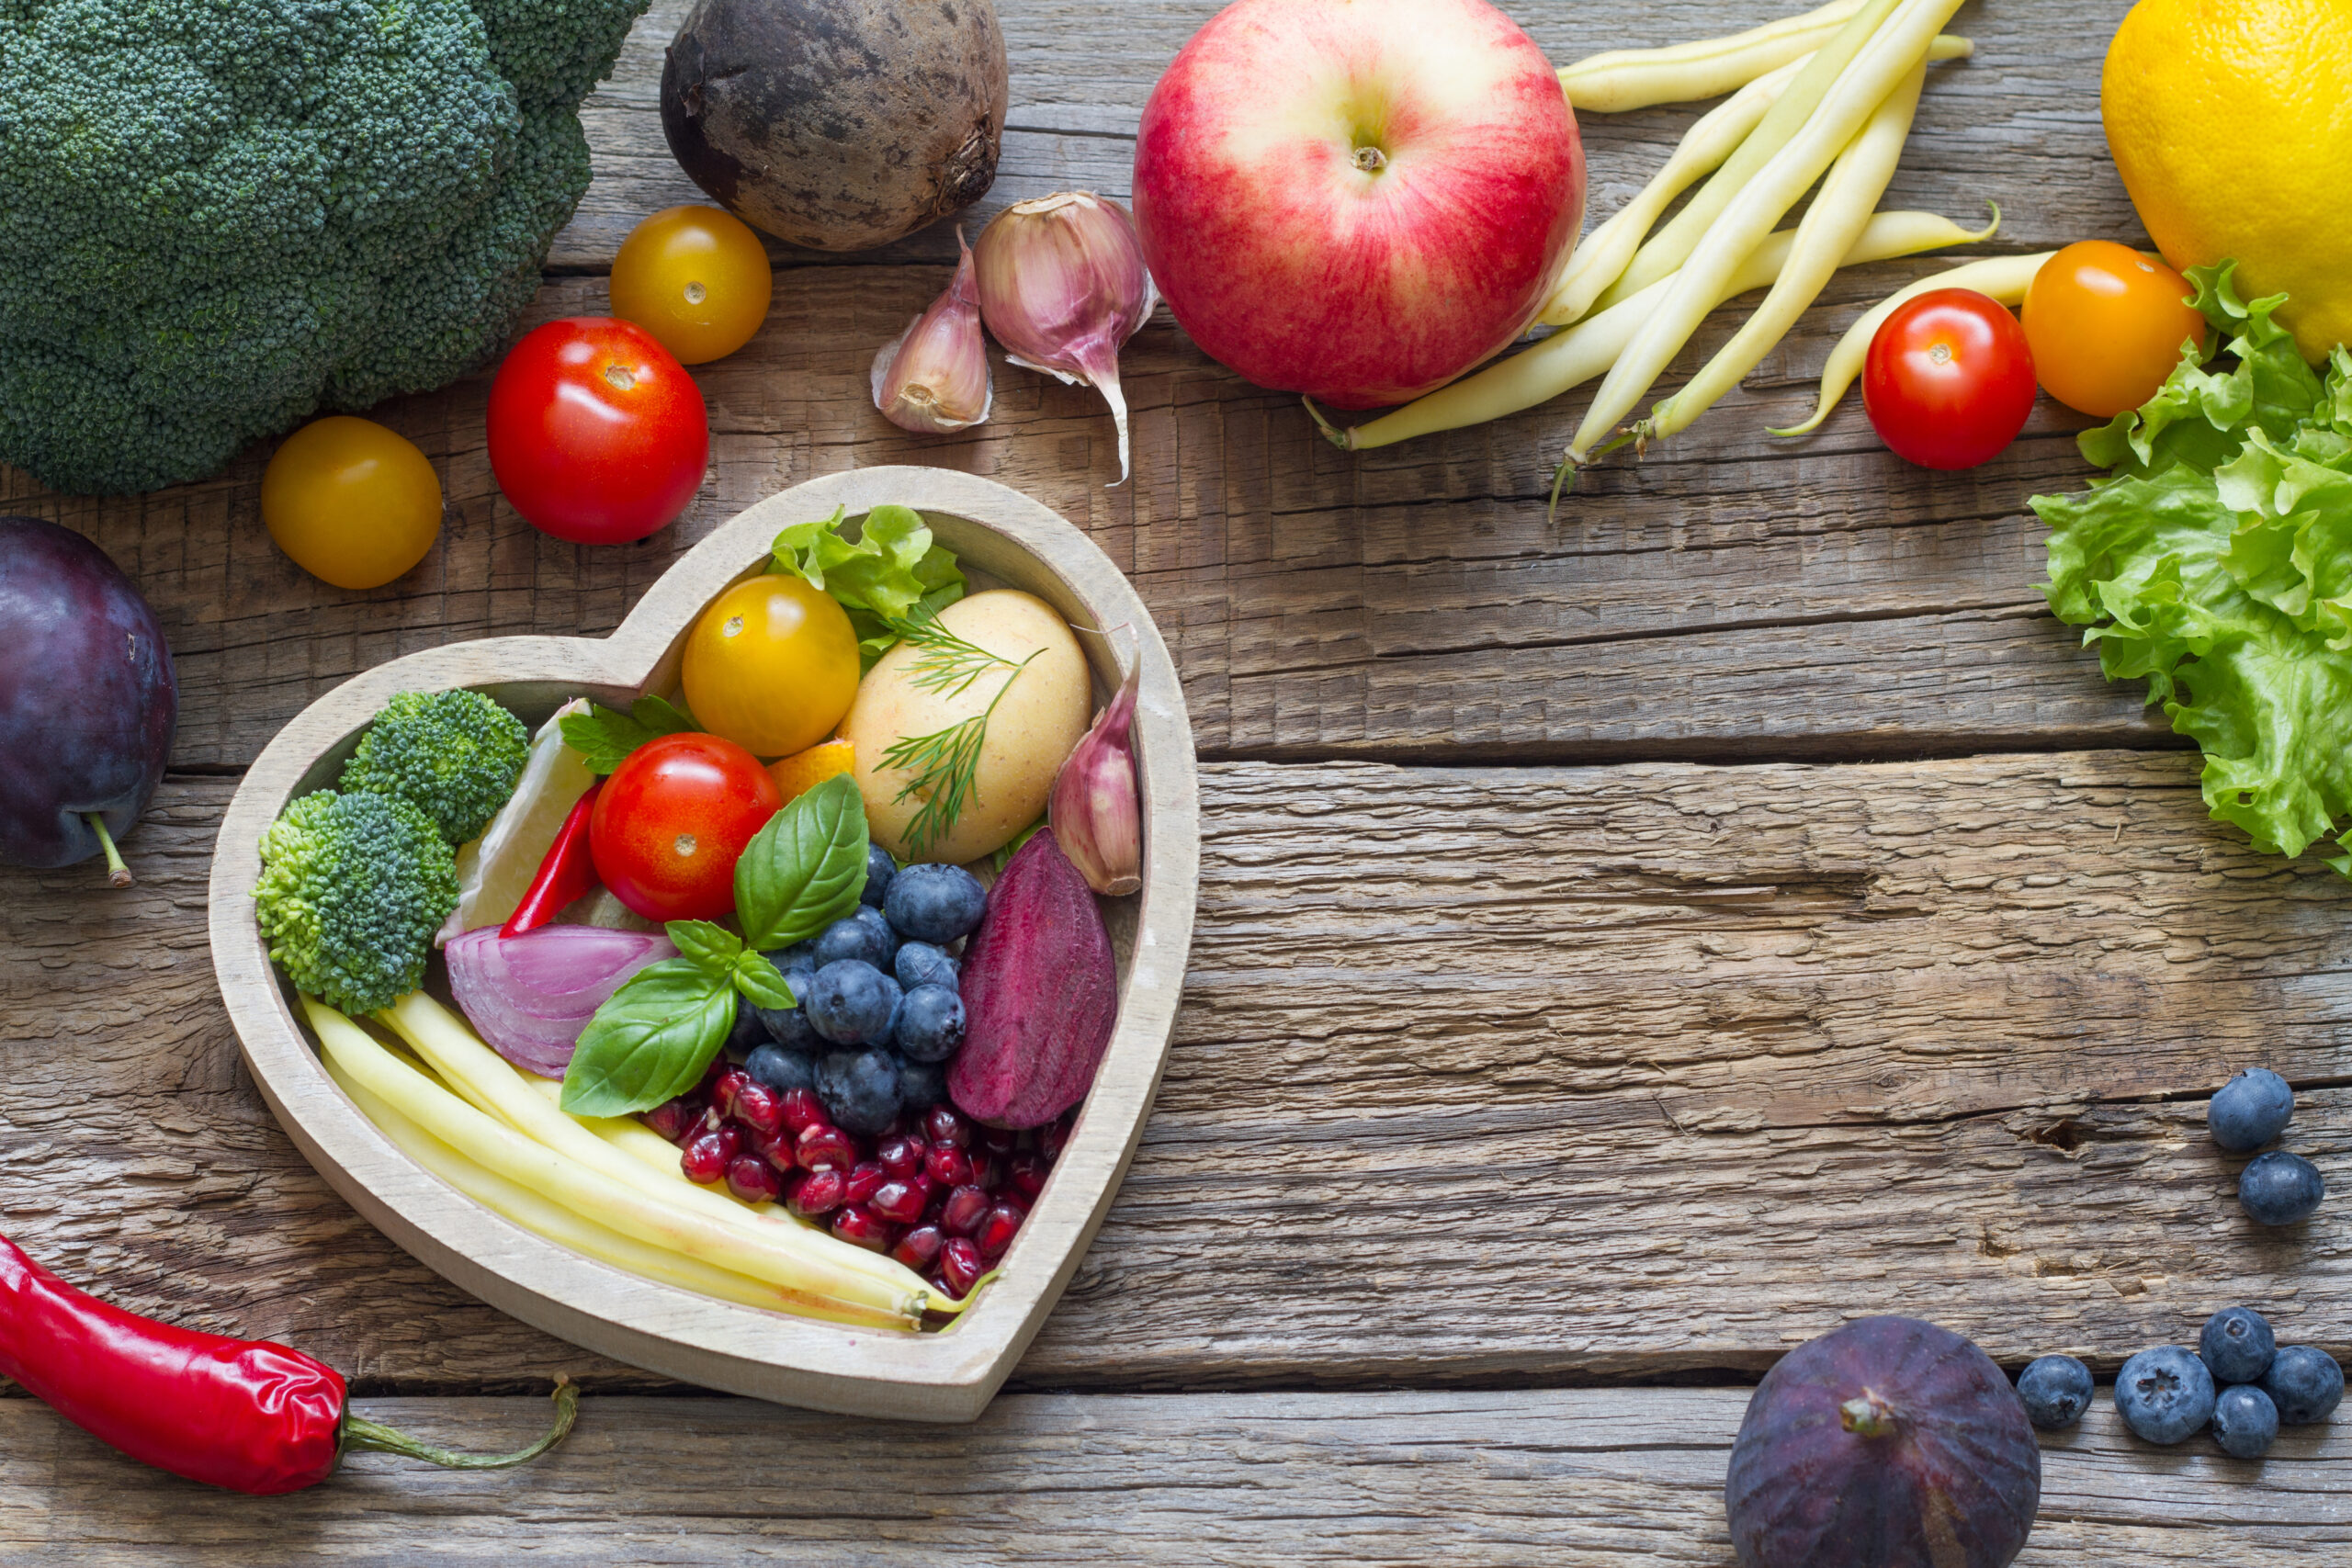 Gesunde Ernährung ist nicht gleich gesunde Ernährung – das weiß die BVO-Osteopathin Michaela Wunsch. Foto: udra11 / Shutterstock